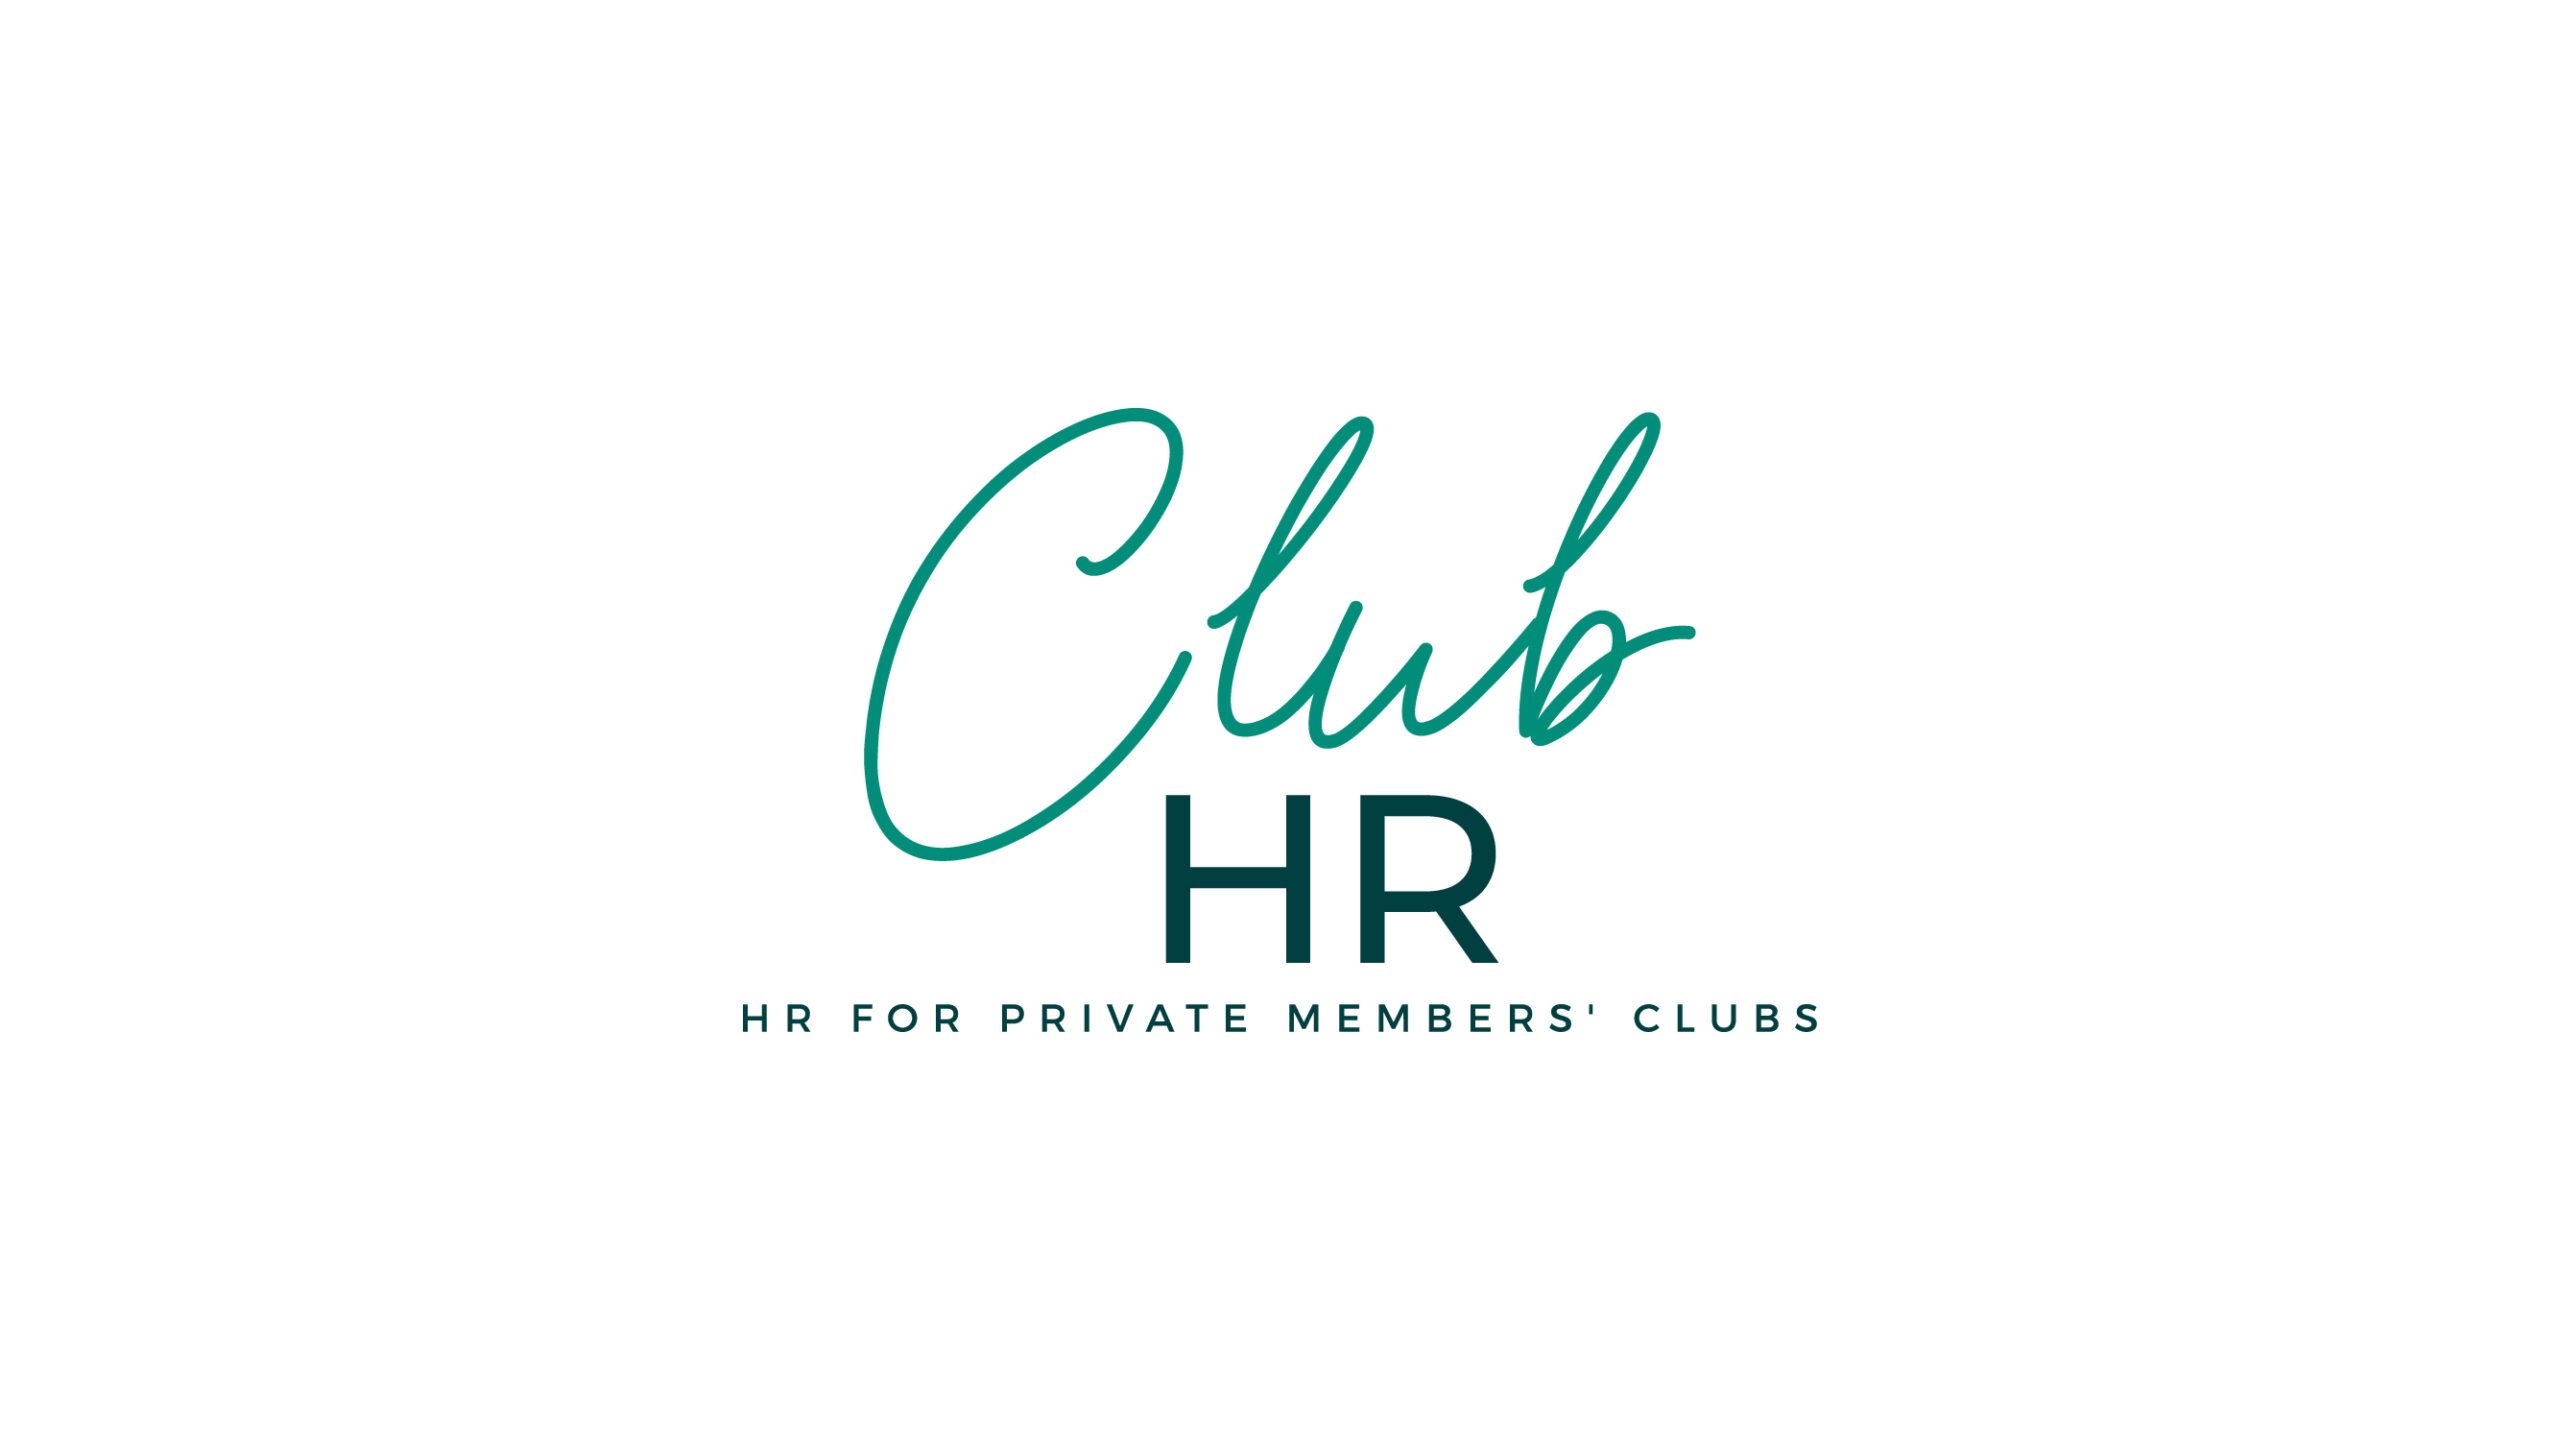 Club HR